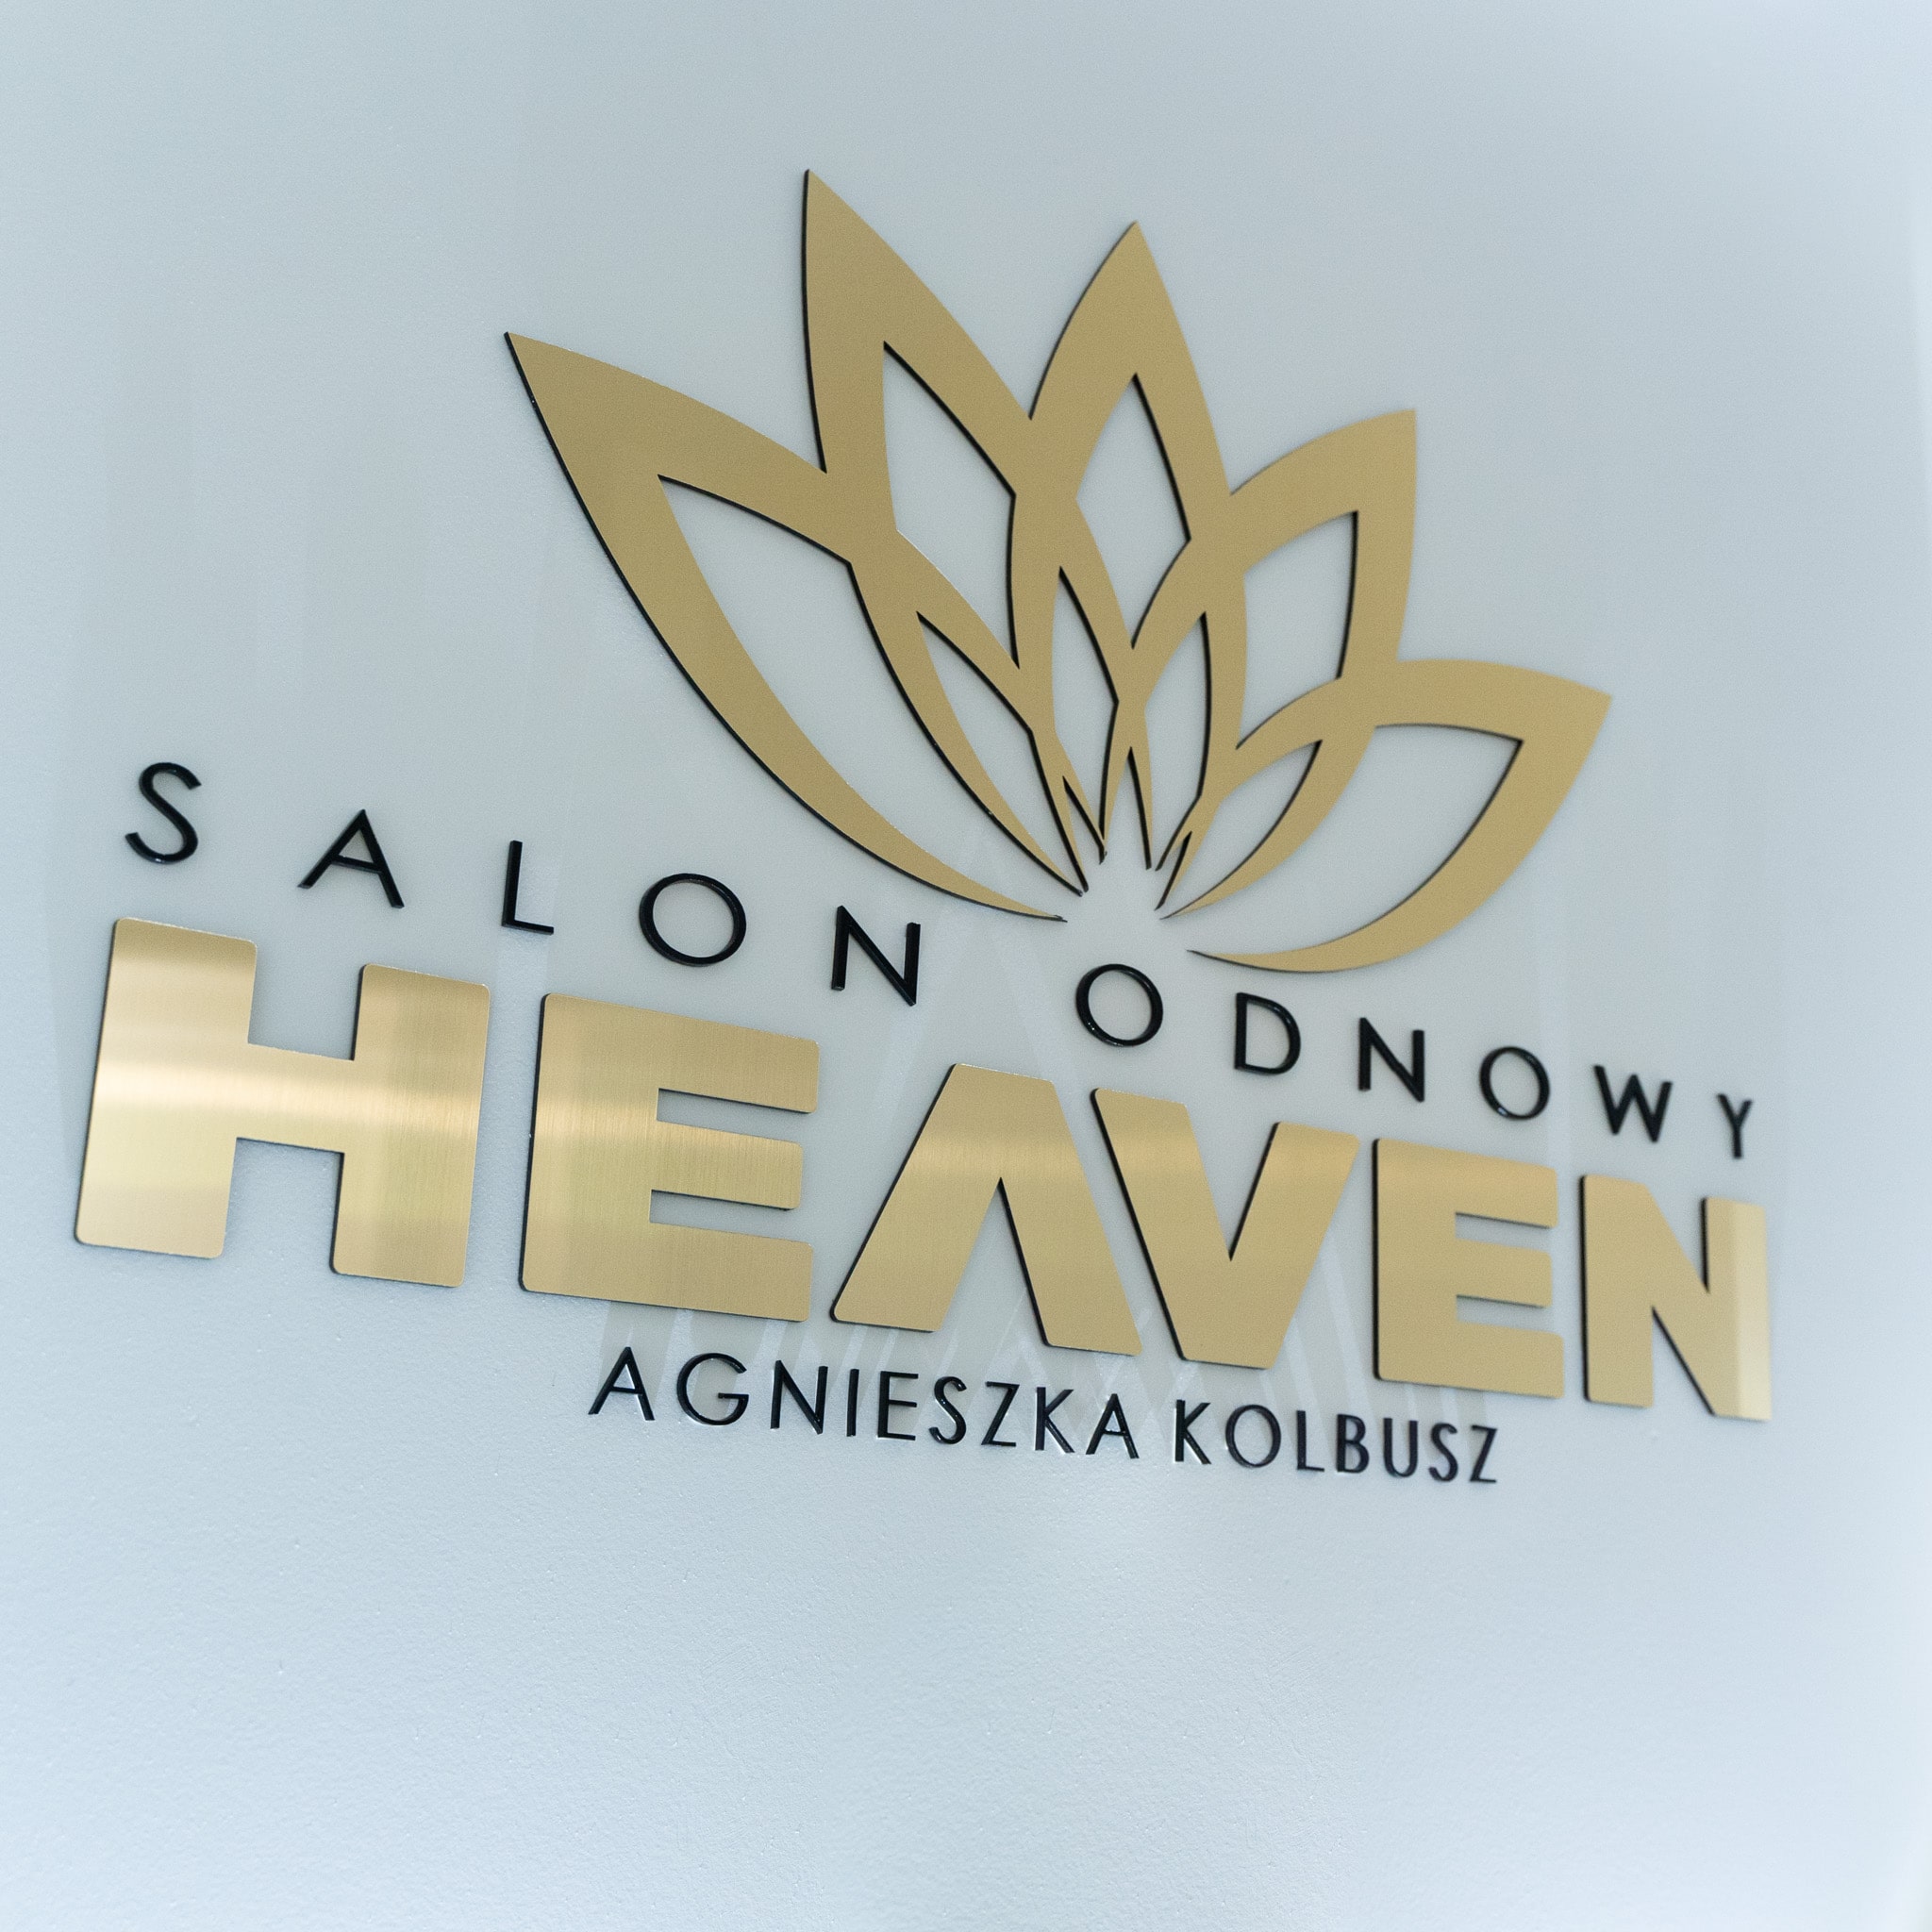 Zapraszamy do Salonu Odnowy Heaven w Pliźnie, gdzie obecnie pracuje nasz oryginalny laser naczyniowy